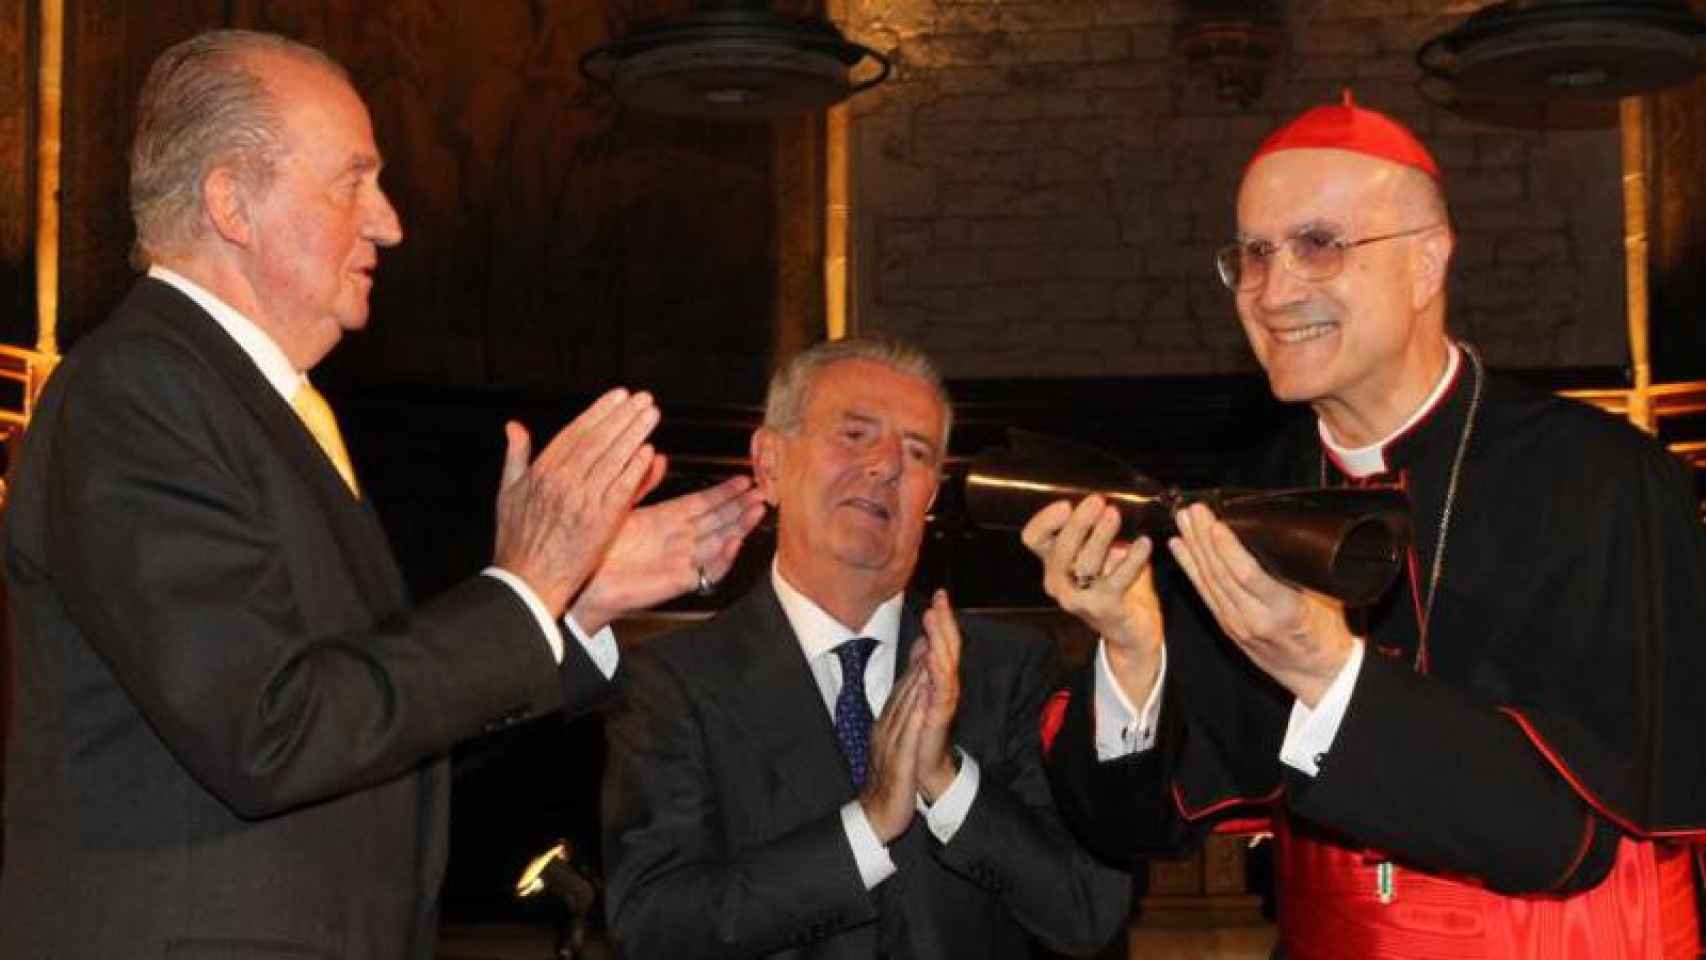 Imagen de la entrega del IV Premio Internacional Conde de Barcelona al cardenal Tarcisio Bertone.